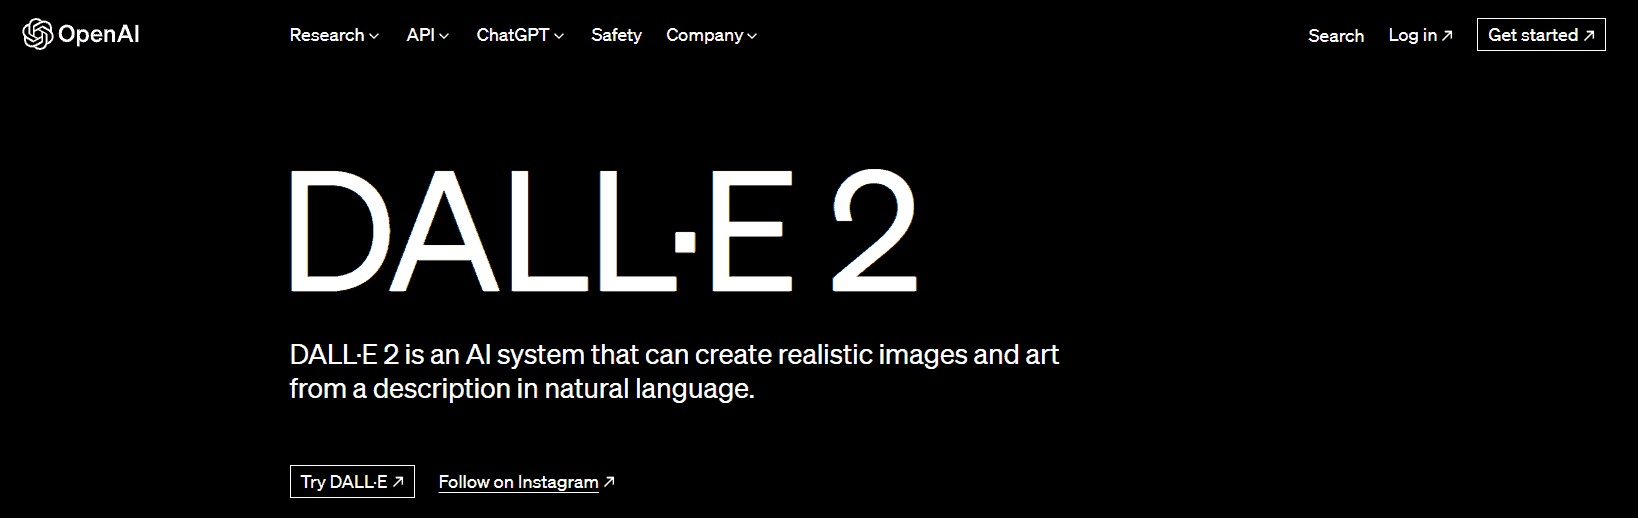 DALL-E 2 Landing Page